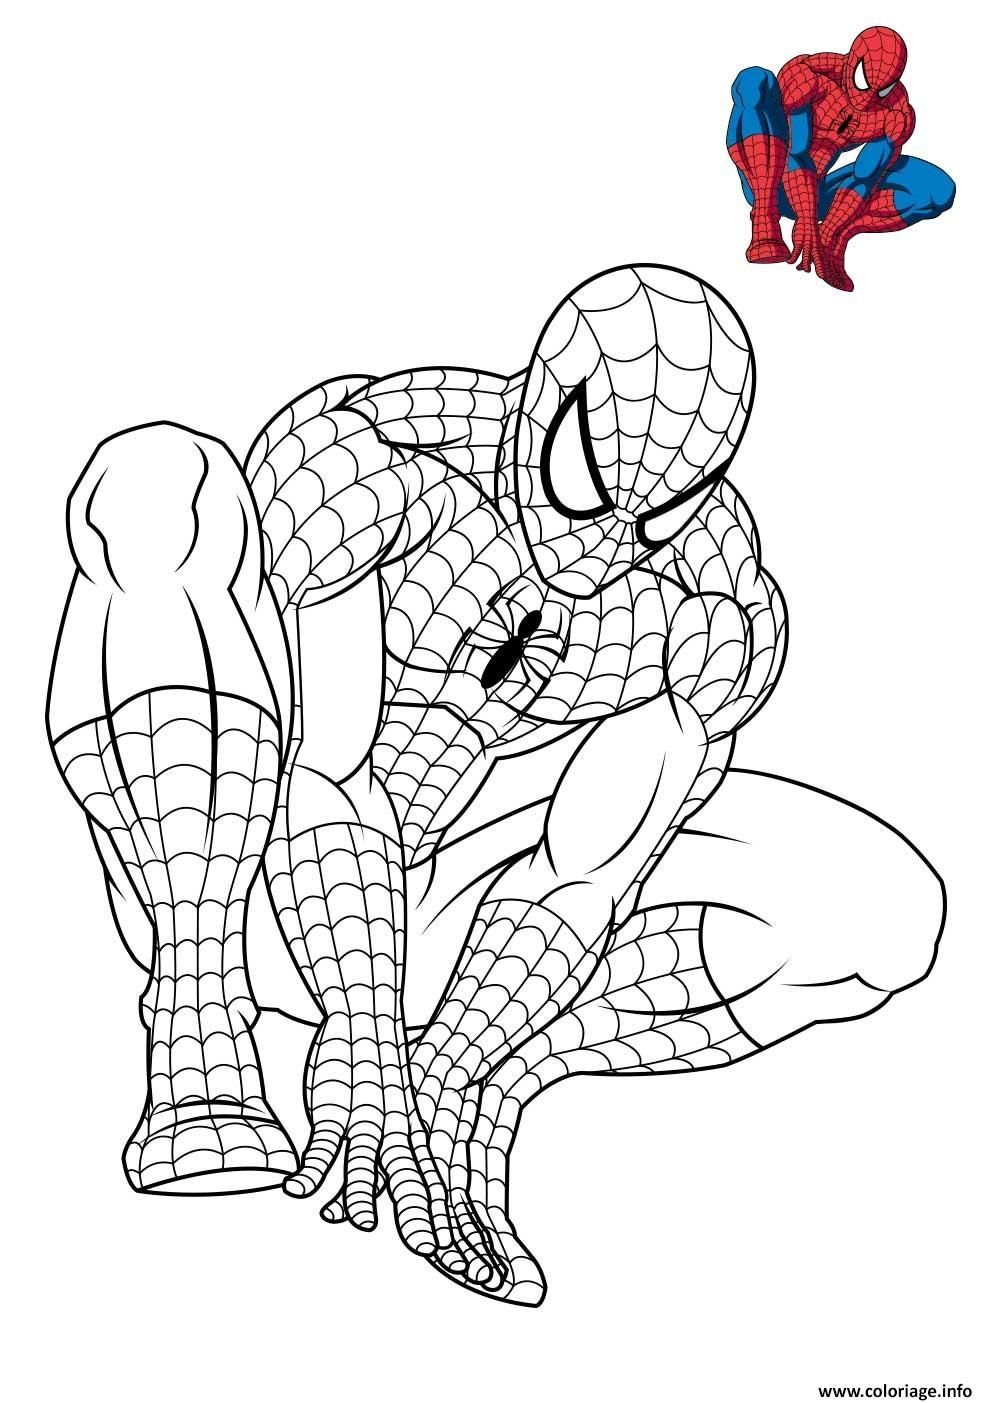 Coloriage Spiderman 3 En Reflexion Dessin Imprimer Spiderman Coloriage à Spiderman Imprimer